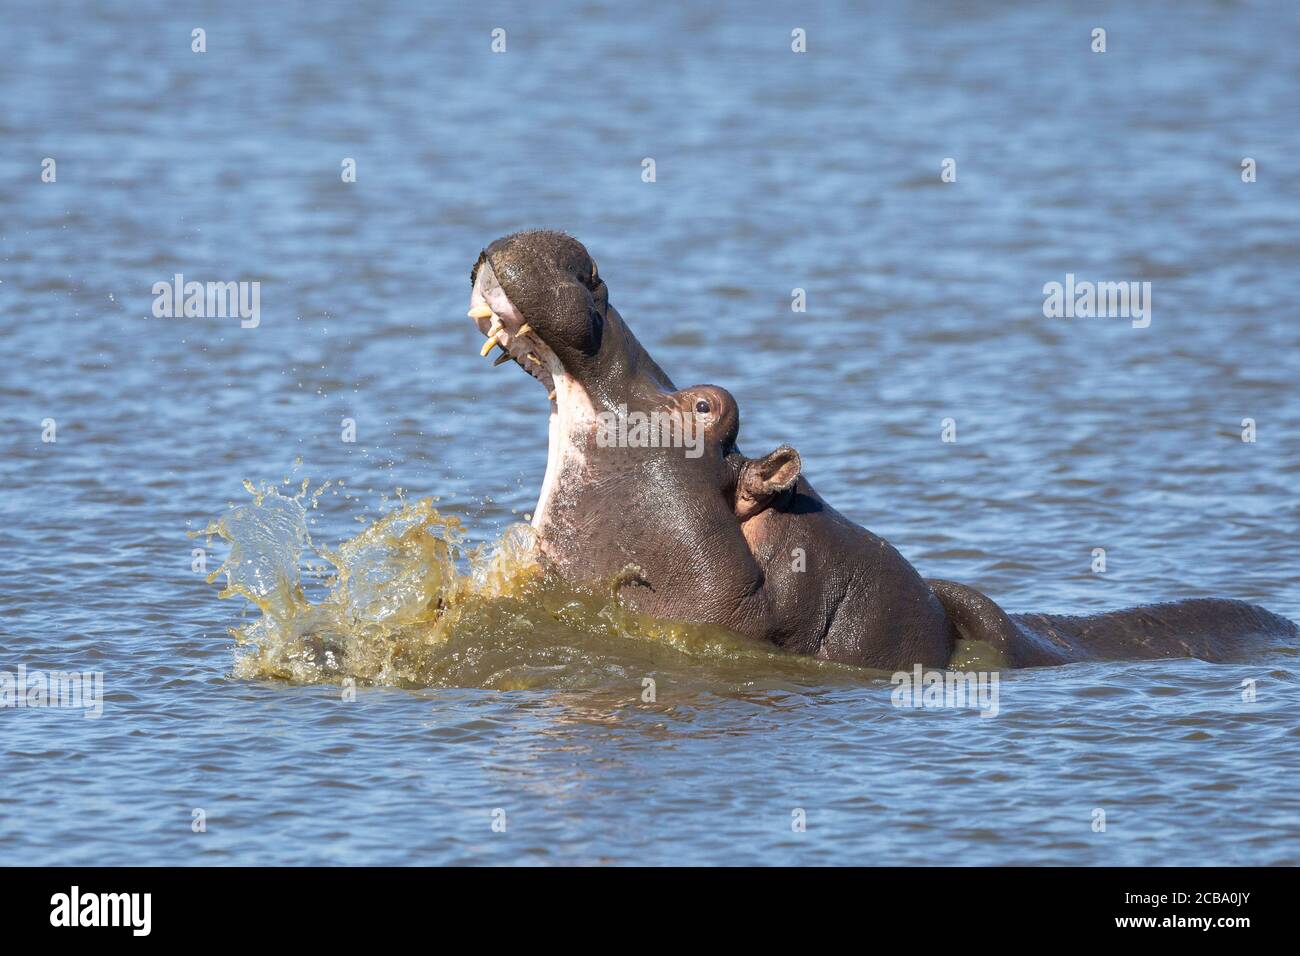 Un jeune hippopotame baille dans la lumière de l'après-midi avec des éclaboussures d'eau autour Sa bouche s'ouvre à Kruger Park en Afrique du Sud Banque D'Images